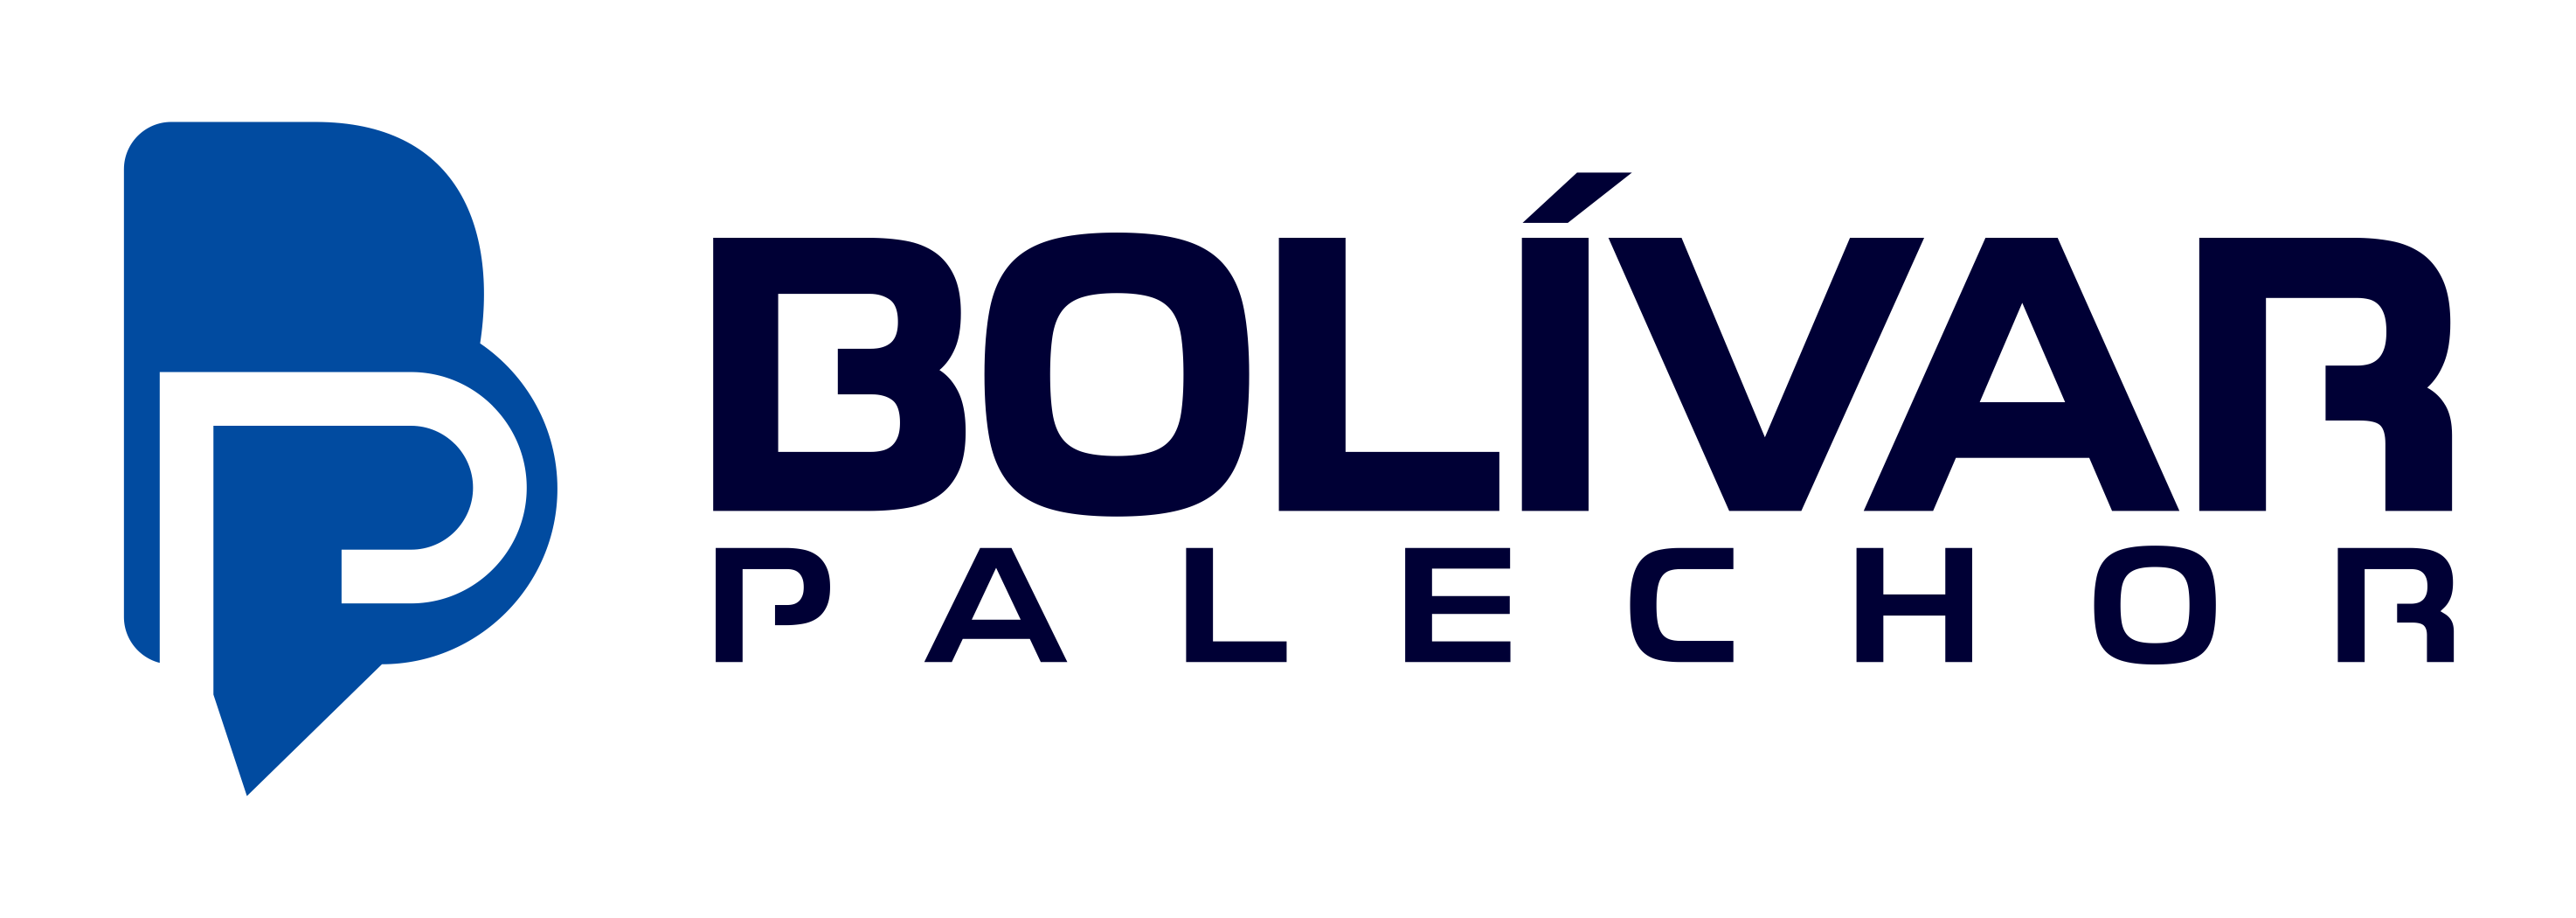 Bolivar Palechor - Educador y Conferencista